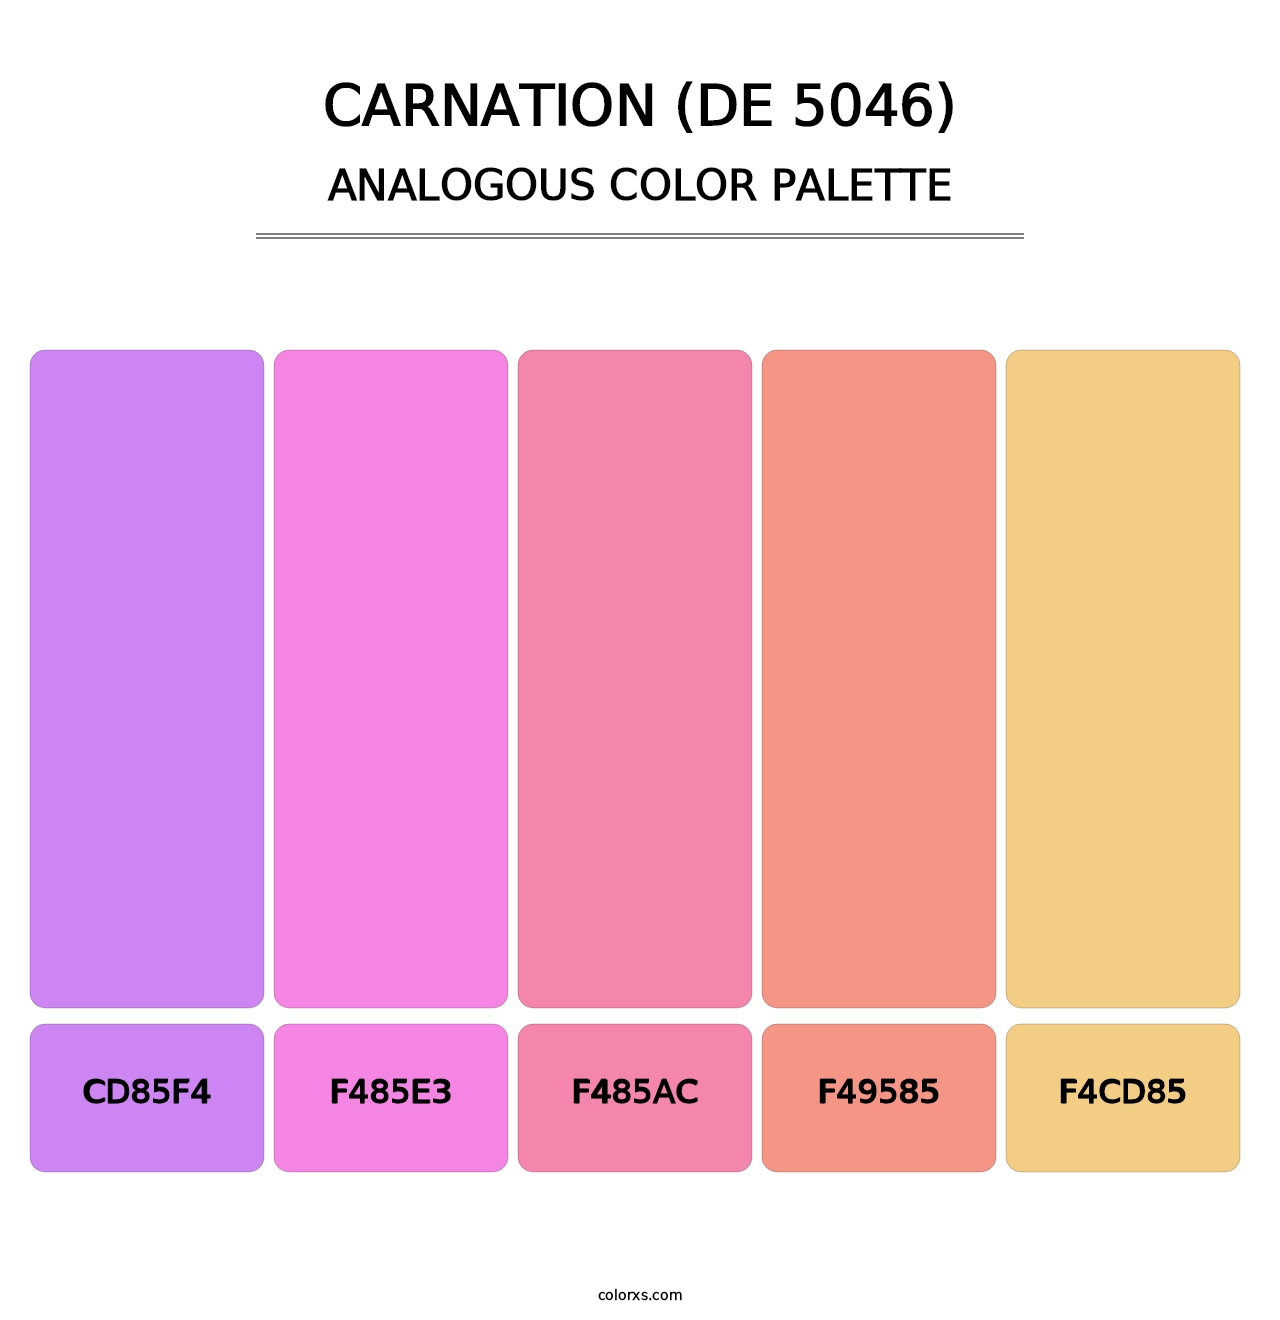 Carnation (DE 5046) - Analogous Color Palette